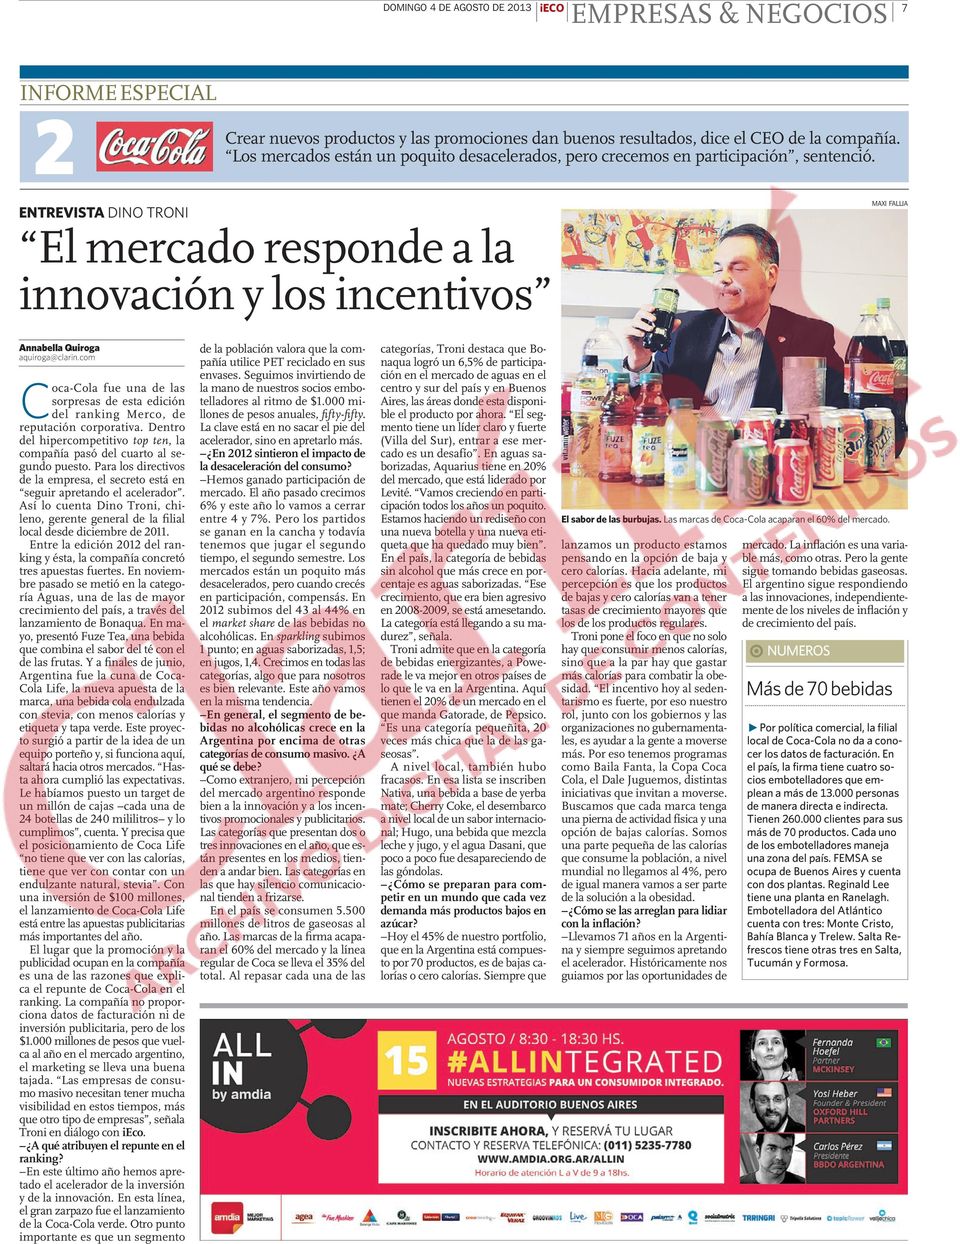 ENTREVISTA DINO TRONI El mercado responde a la innovación y los incentivos MAXI FALLIA Annabella Quiroga aquiroga@clarin.